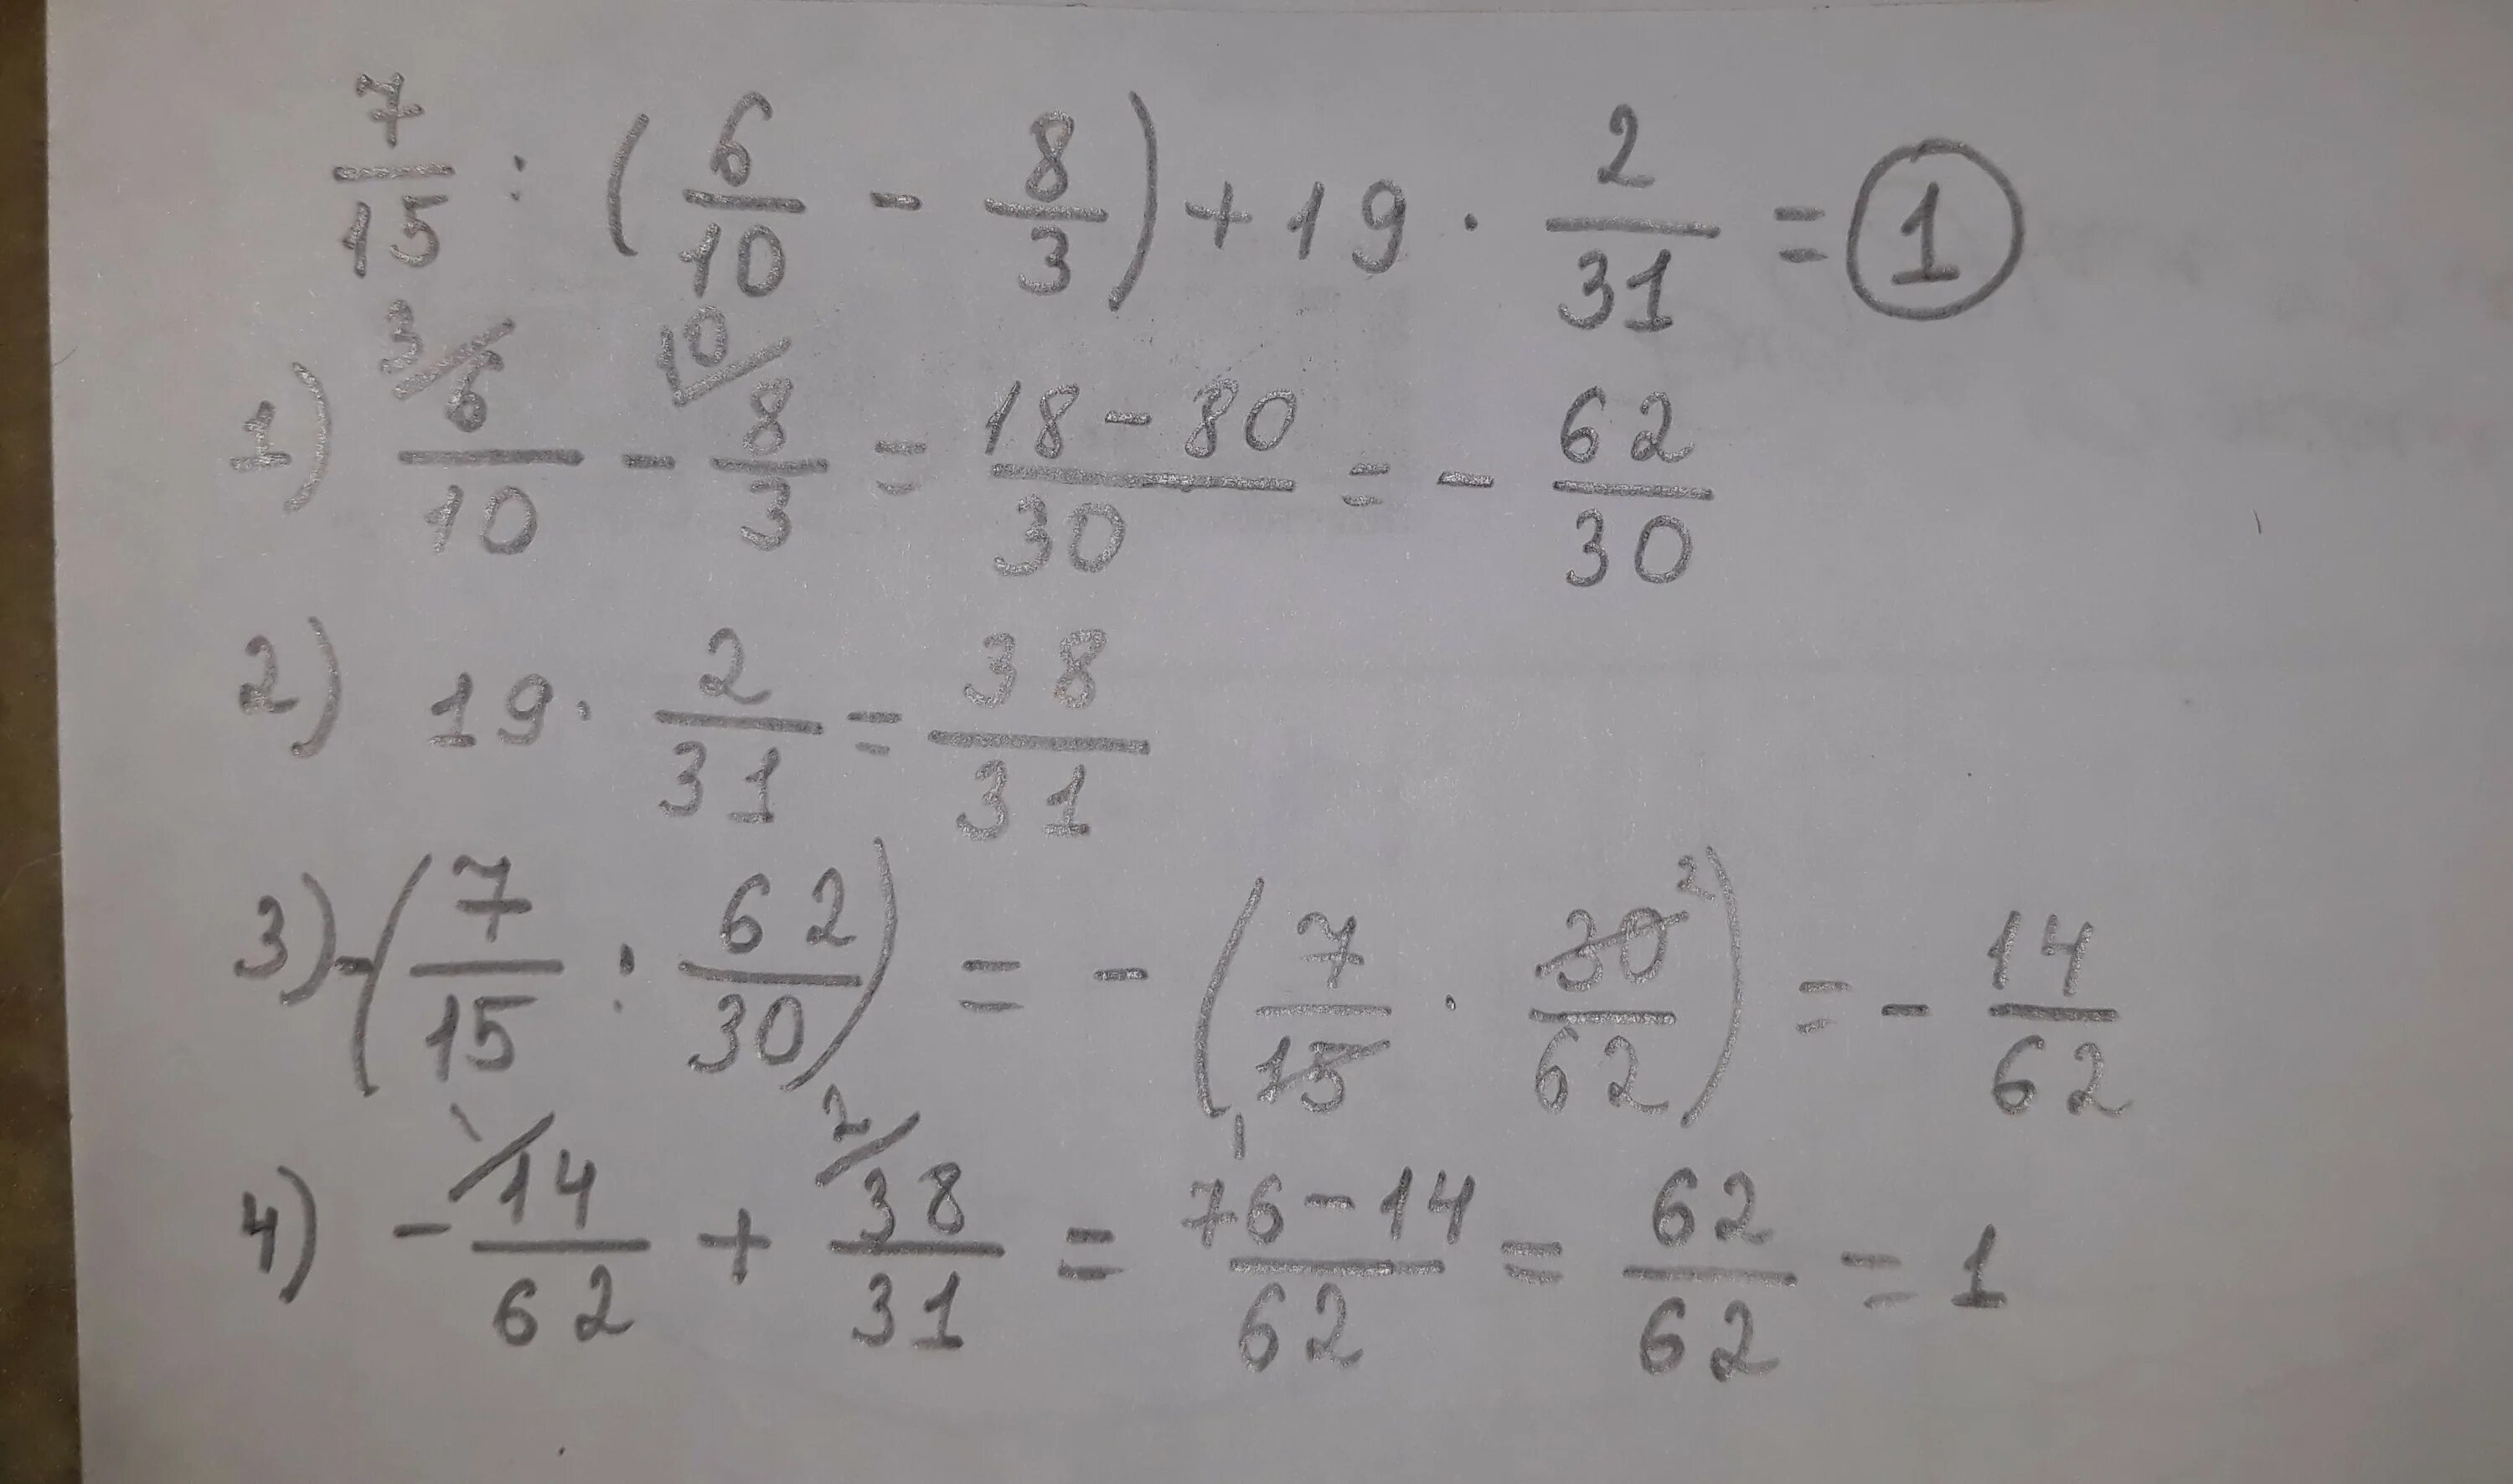 10 3 13 5 решение. 7/15:(6/10-8/3)+19*2/31. Вычислите 3/10-2/15. 7/15 6/10-8/3 +19 2/31 Решение. Вычисли 8 + 3 \19.